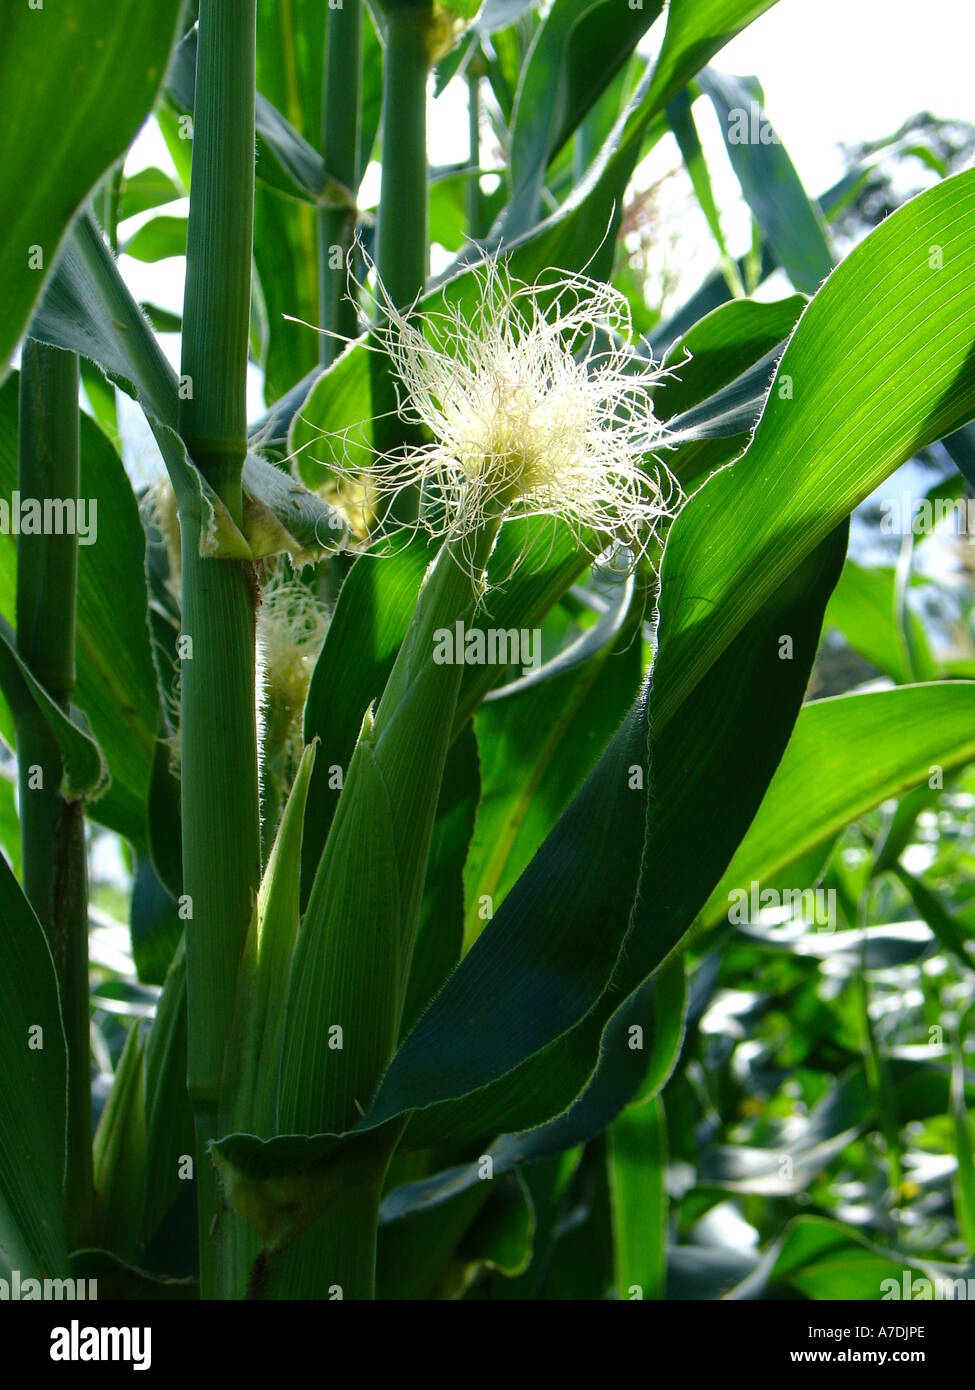 Verde del campo productivo de exuberantes plantas de maíz (el maíz) con orejas de seda y en la región de Copperbelt Zamia, África austral Foto de stock